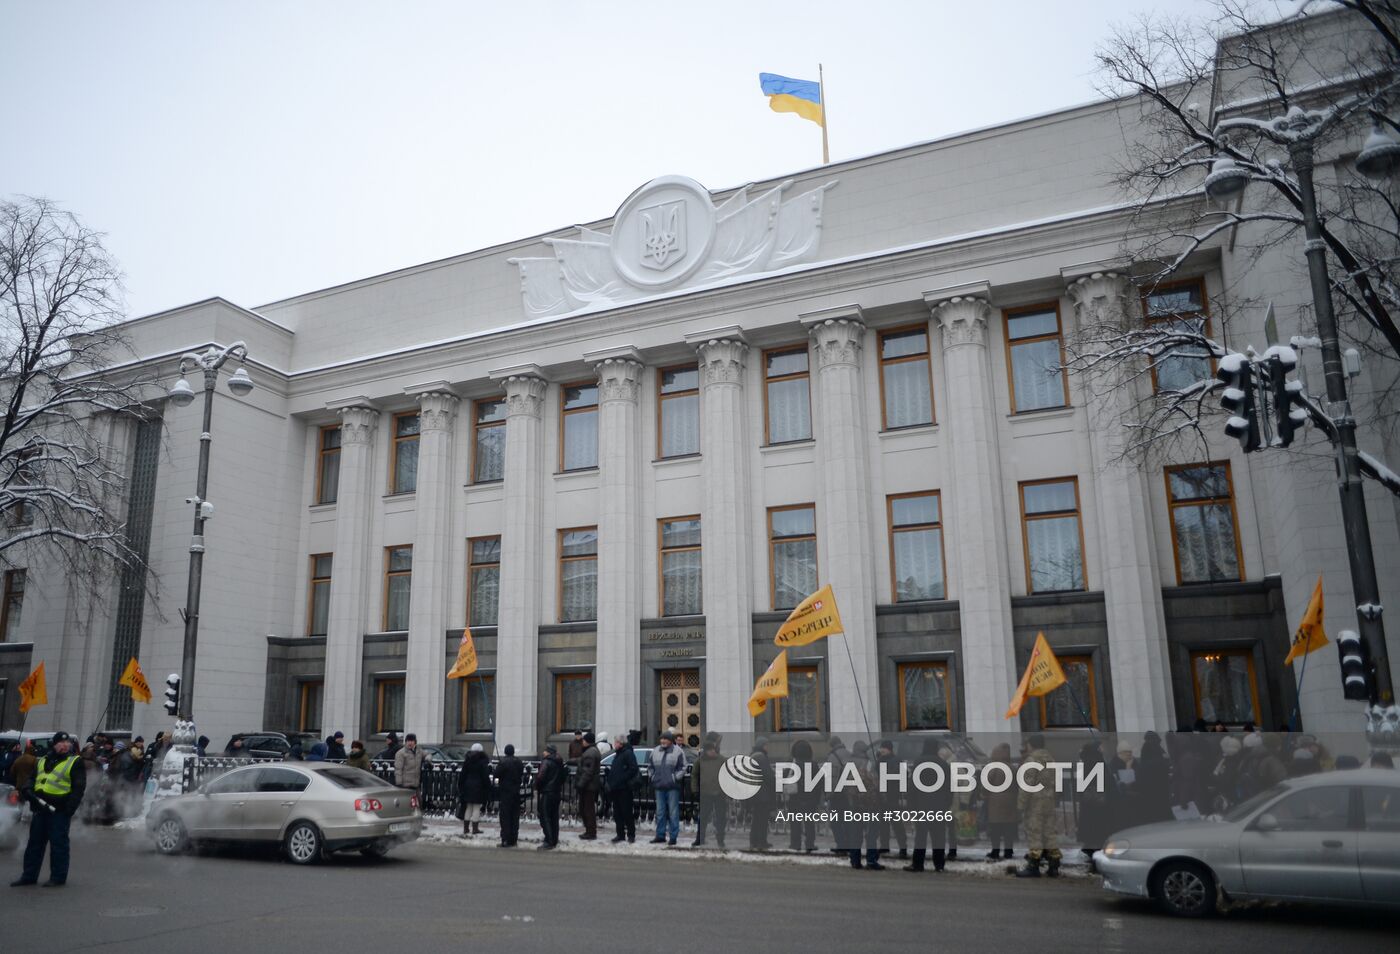 Митинг вкладчиков банка Михайловский в Киеве